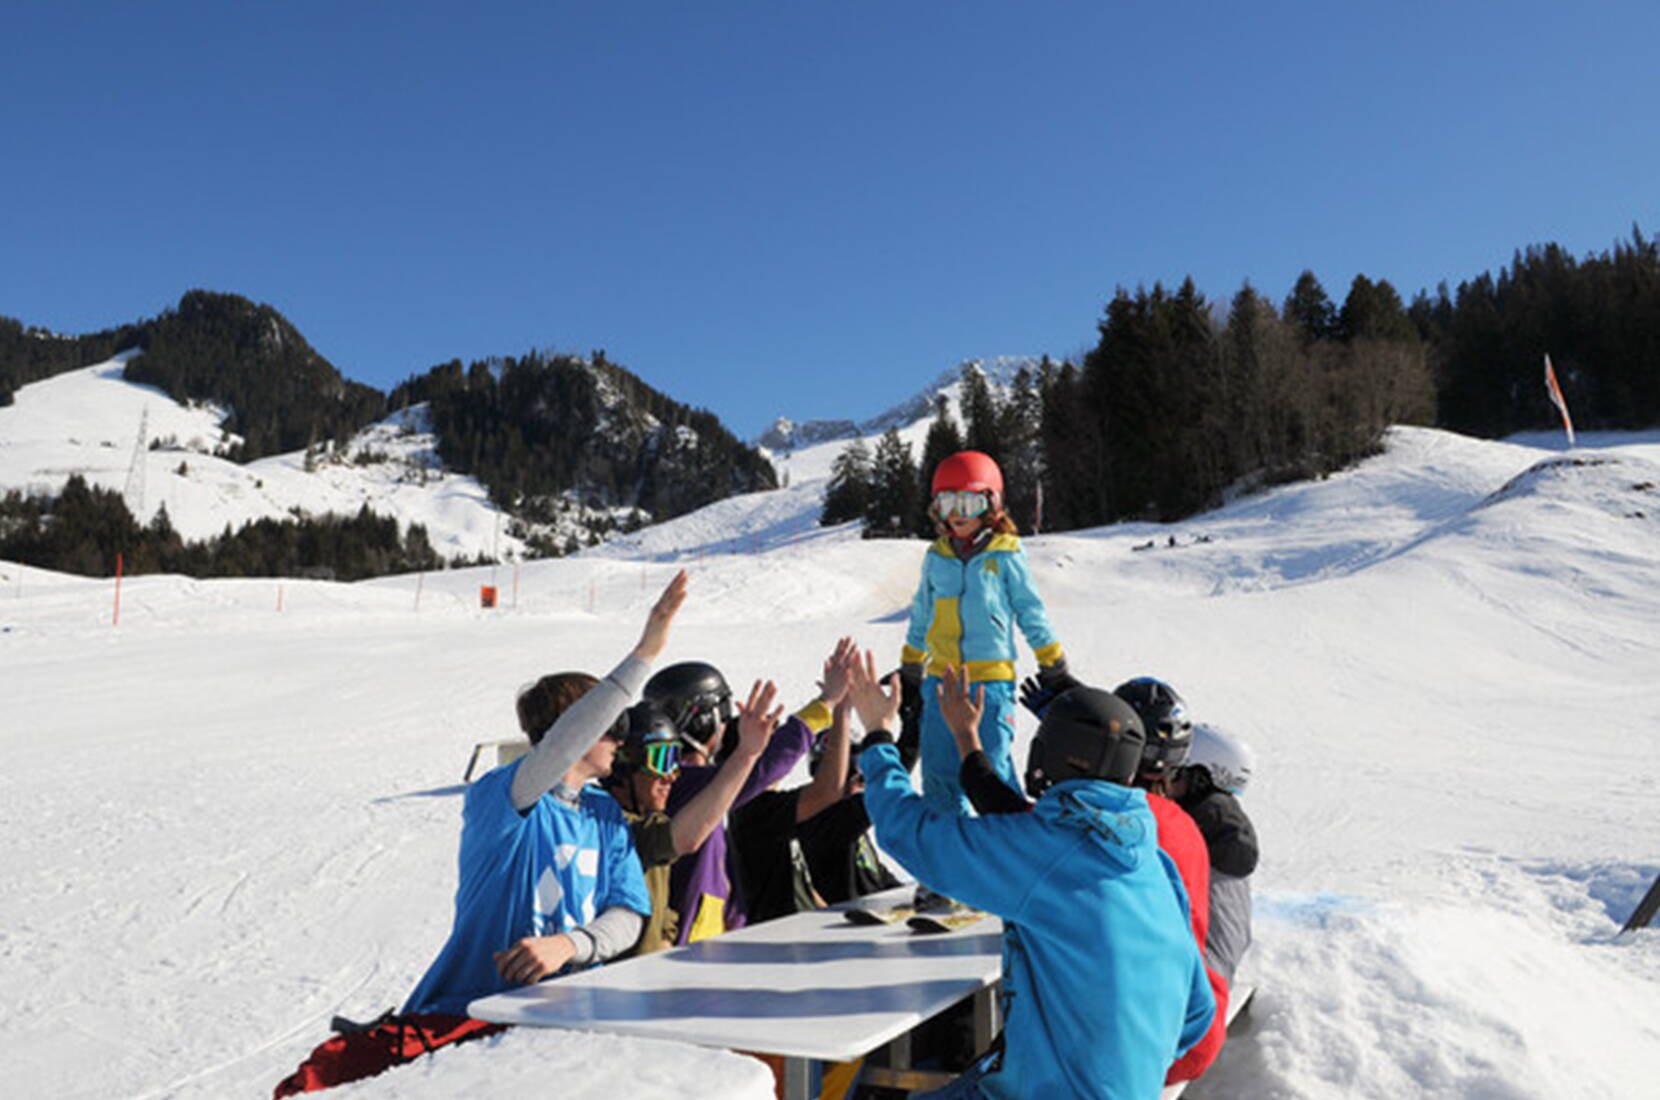 30% di sconto sui biglietti di mezza giornata Kaisereggbahnen Schwarzsee – La destinazione invernale Kaiseregg Schwarzsee nelle Alpi friburghesi vi invita al divertimento invernale. Scarica il voucher prima della tua visita.